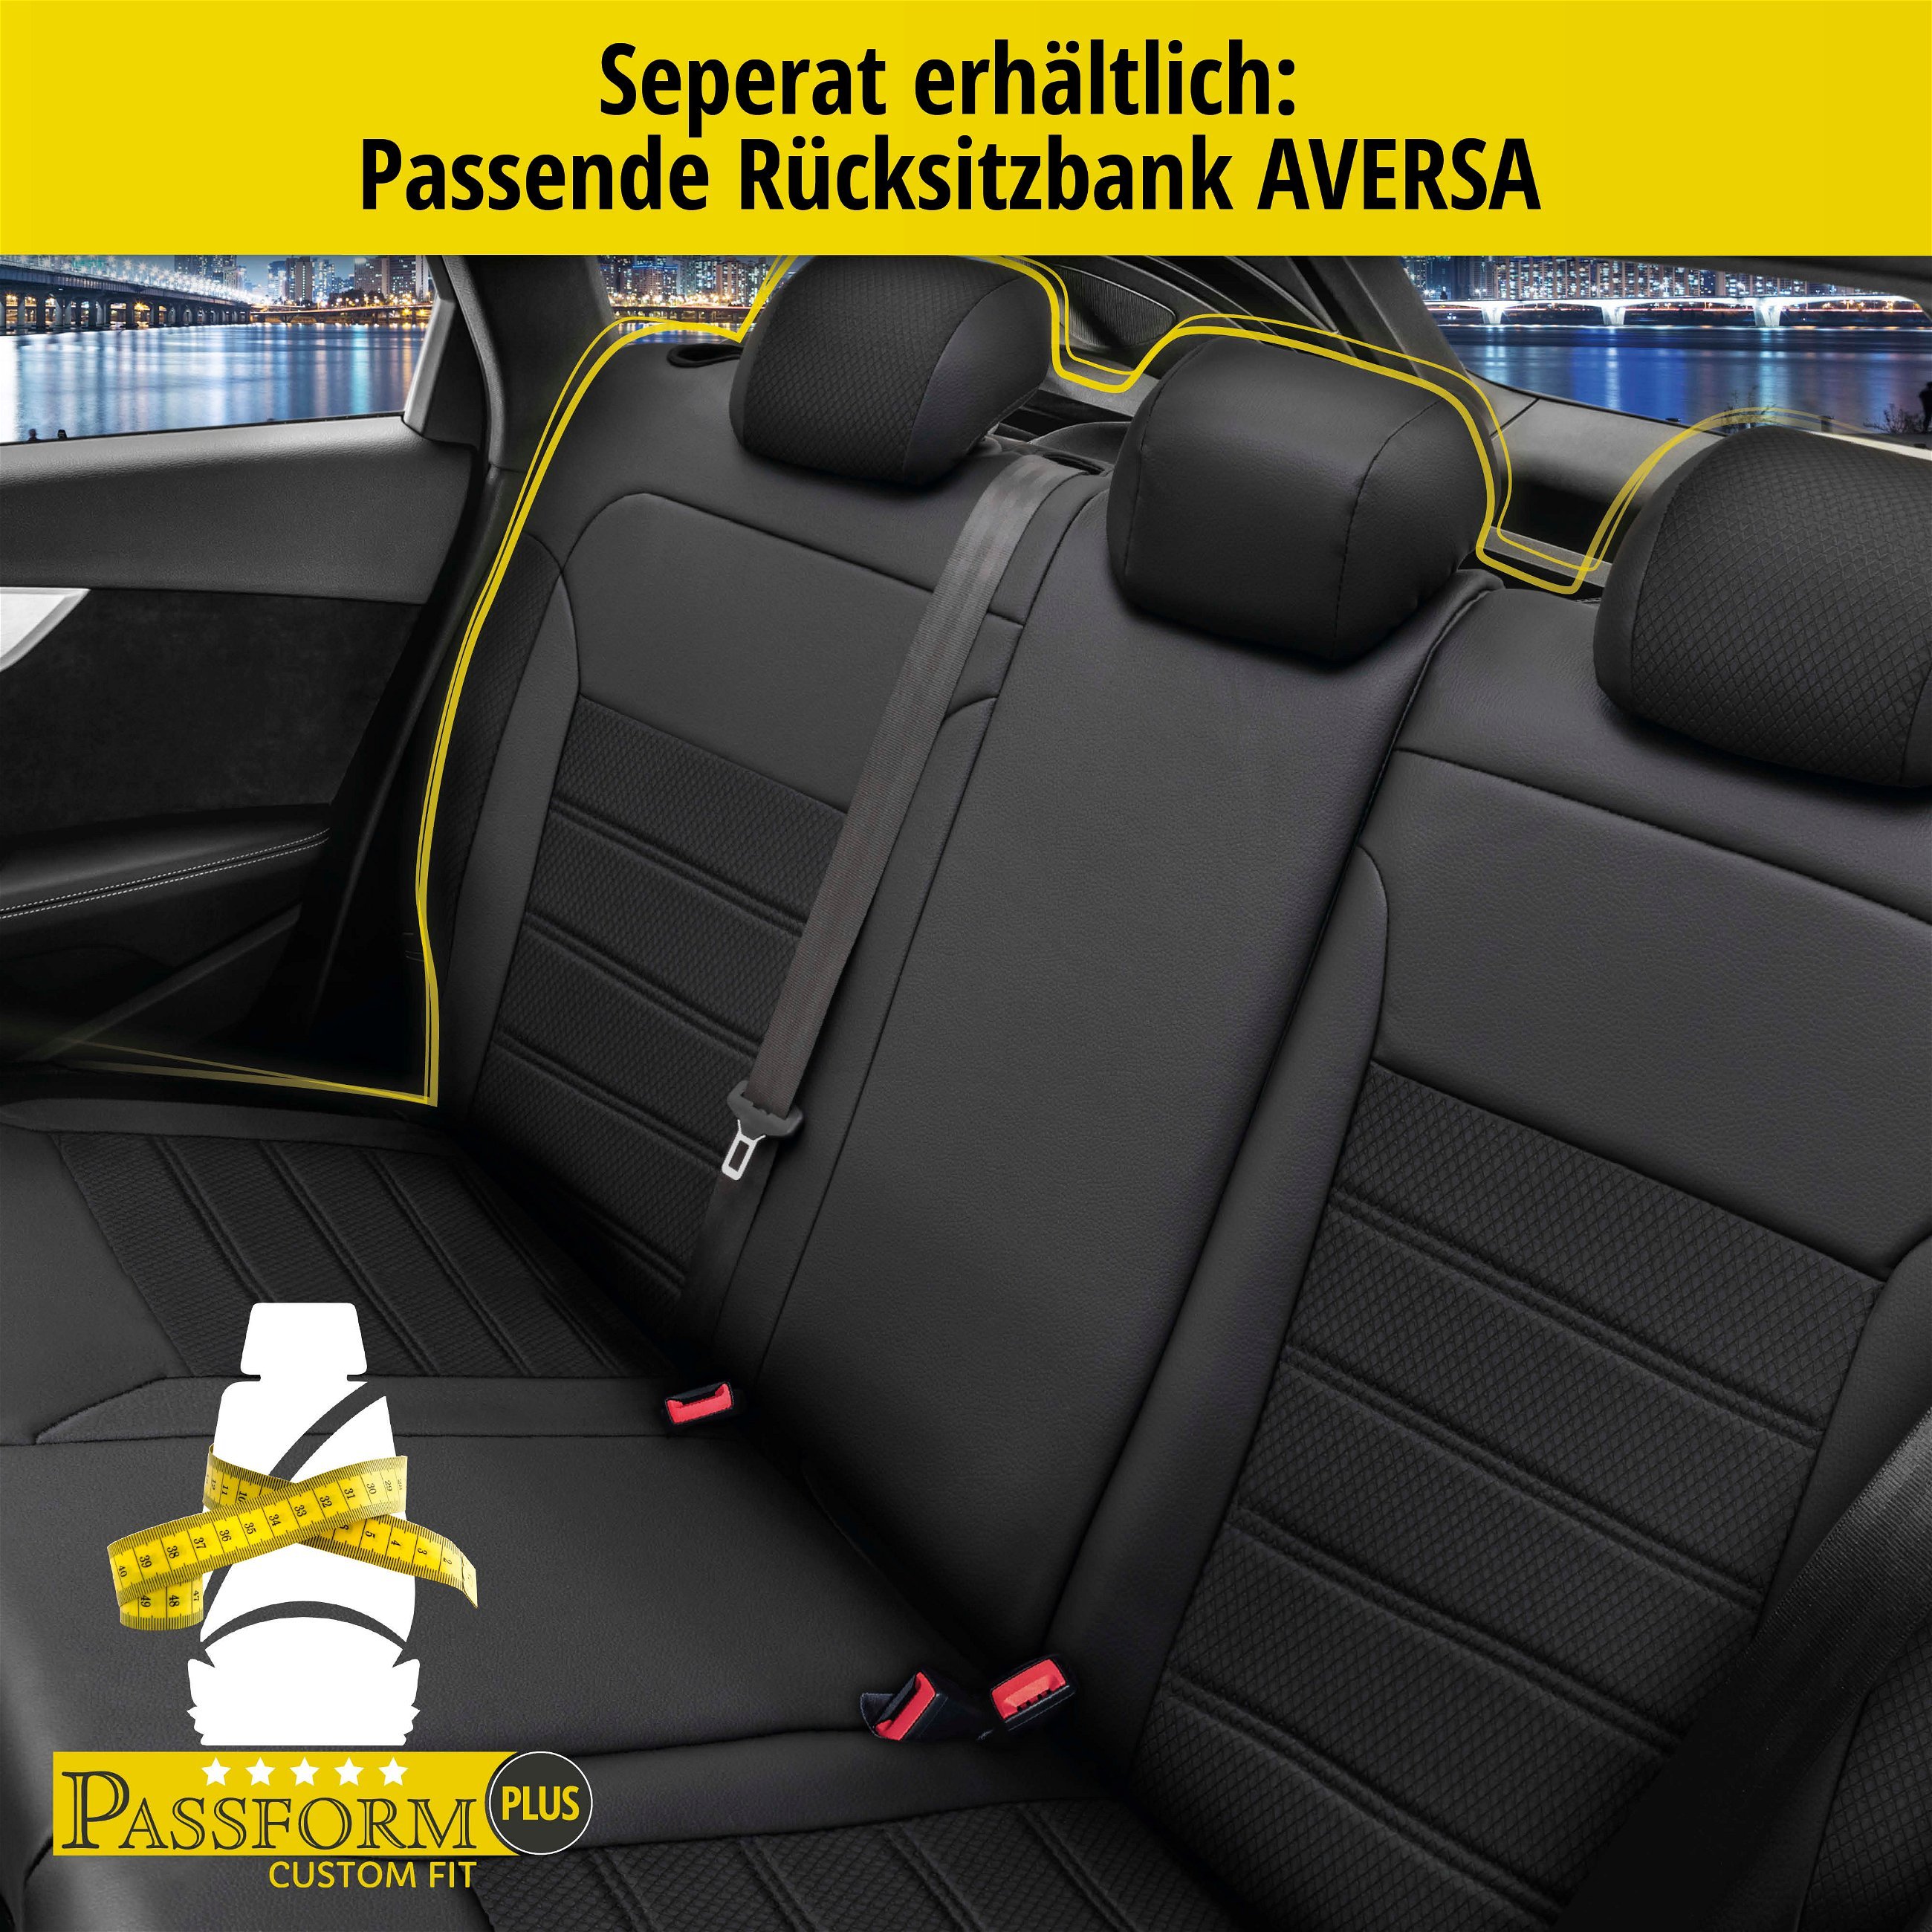 Passform Sitzbezug Aversa für Fiat 500 C (312) 09/2009-Heute, 2 Einzelsitzbezüge für Normalsitze